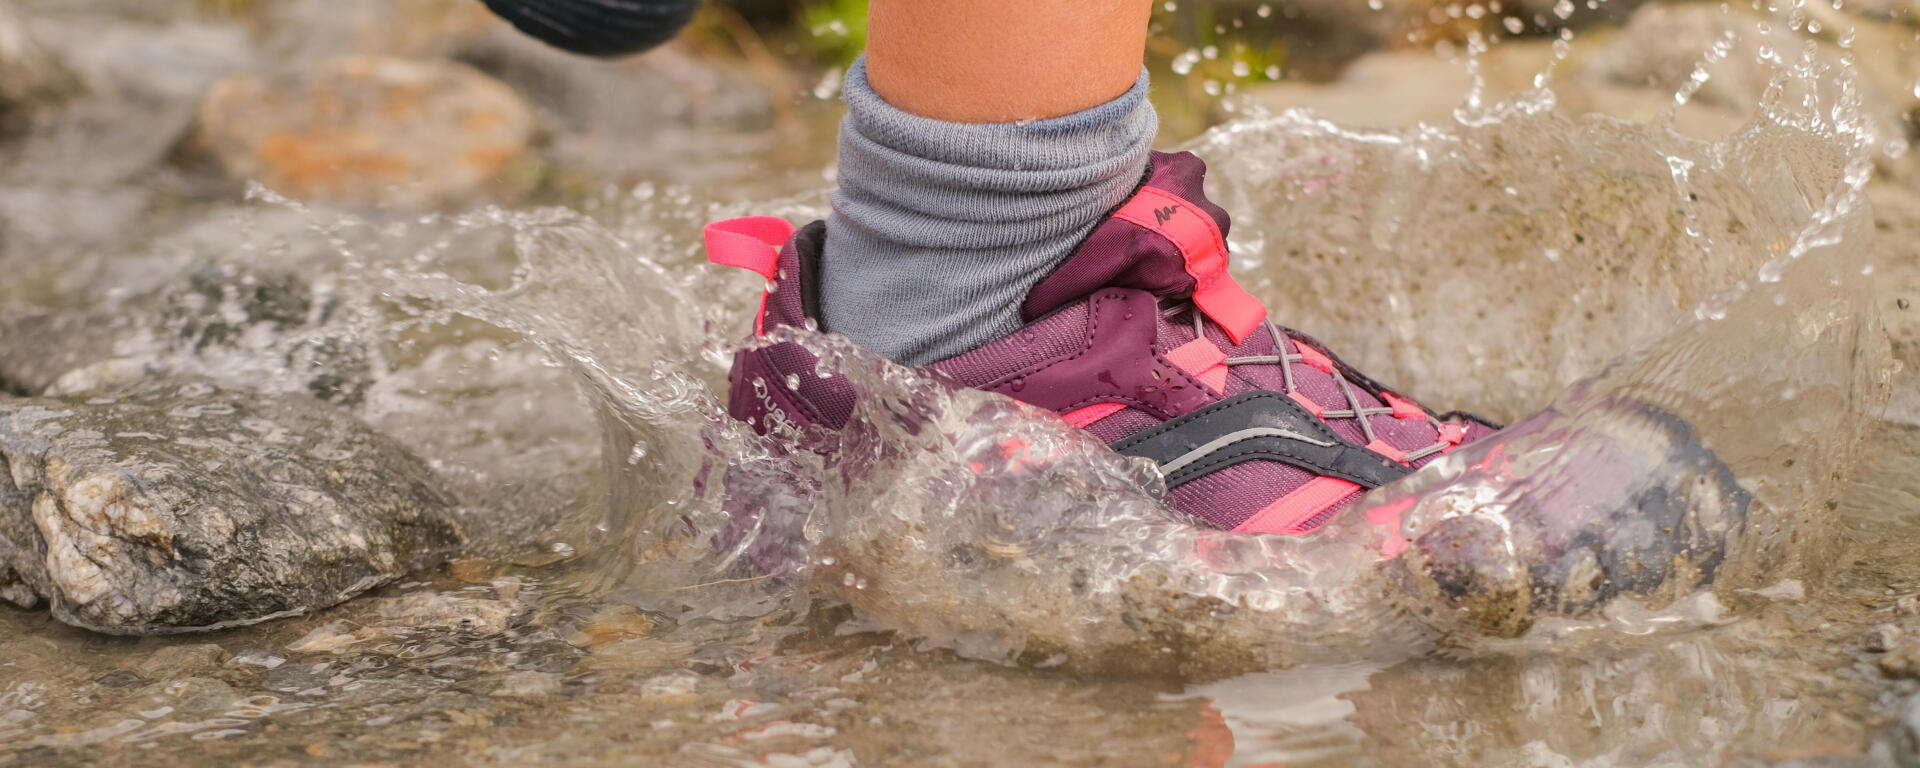 Waterproof hiking shoes